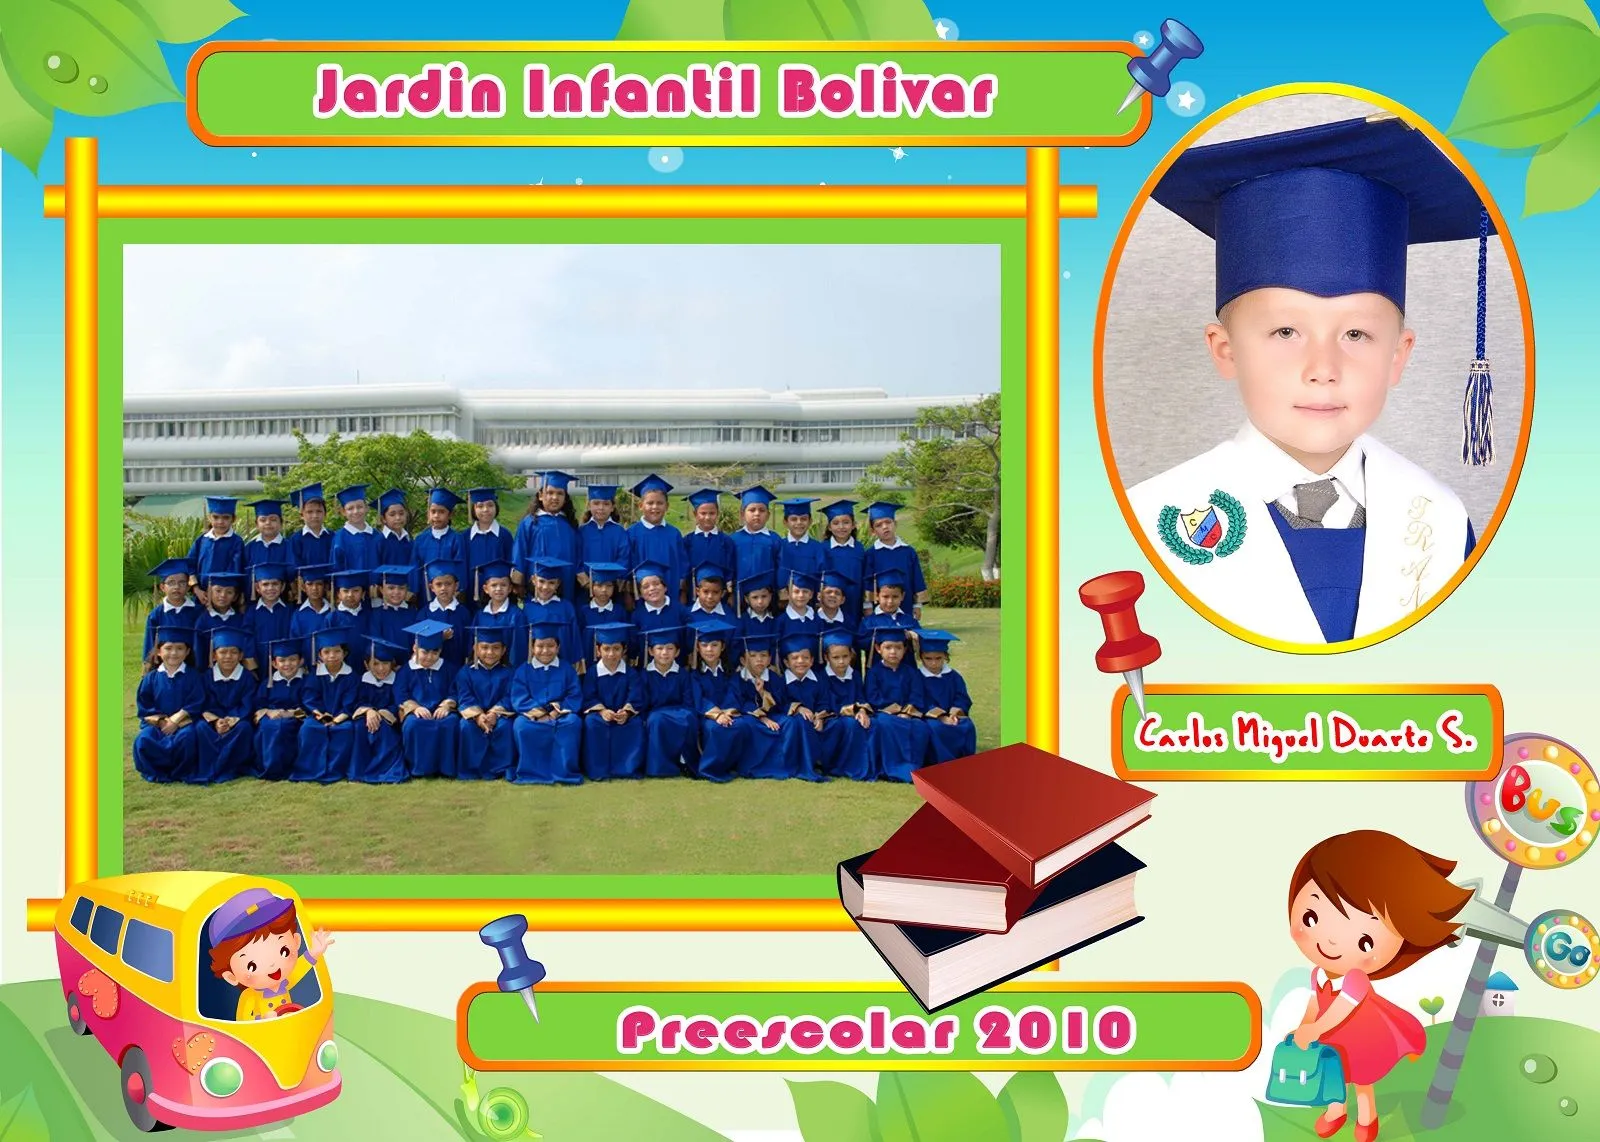 Diplomas de preescolar psd - Imagui